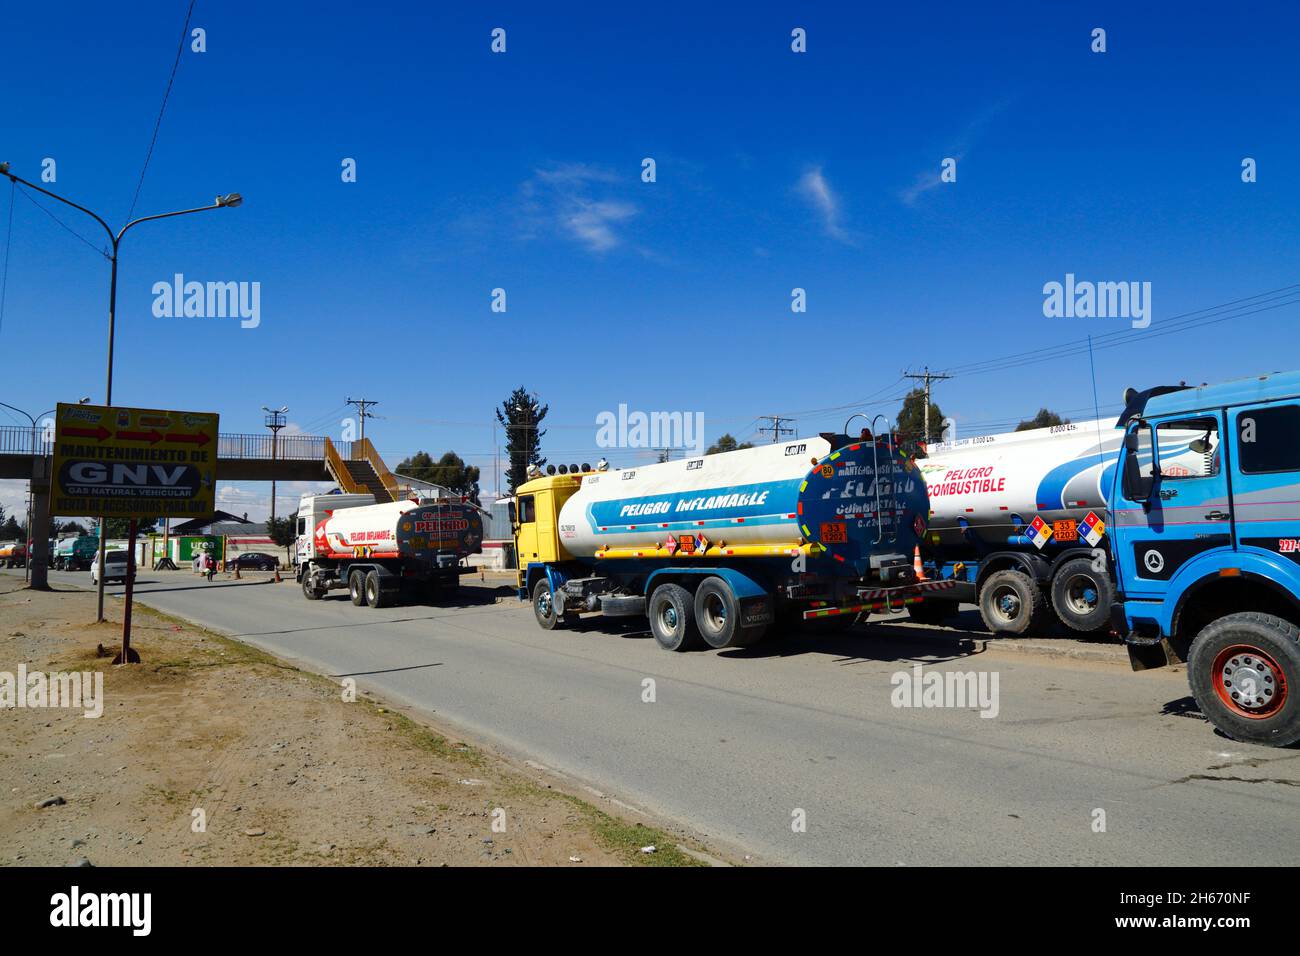 Senkata, El Alto, Bolivie. 13th novembre 2021. Des camions-citernes sont en file d'attente à l'extérieur de l'usine de carburant de Senkata sur AV 6 de Marzo / Camino Oruro à El Alto. Yacimientos Petrolíferos Fiscales Bolivianos (YPFB, la compagnie d'État bolivienne de pétrole / hydrocarbures) ont une grande raffinerie et une grande usine de stockage ici: C'est aussi le centre de distribution pour fournir la Paz, El Alto et la région environnante. Banque D'Images